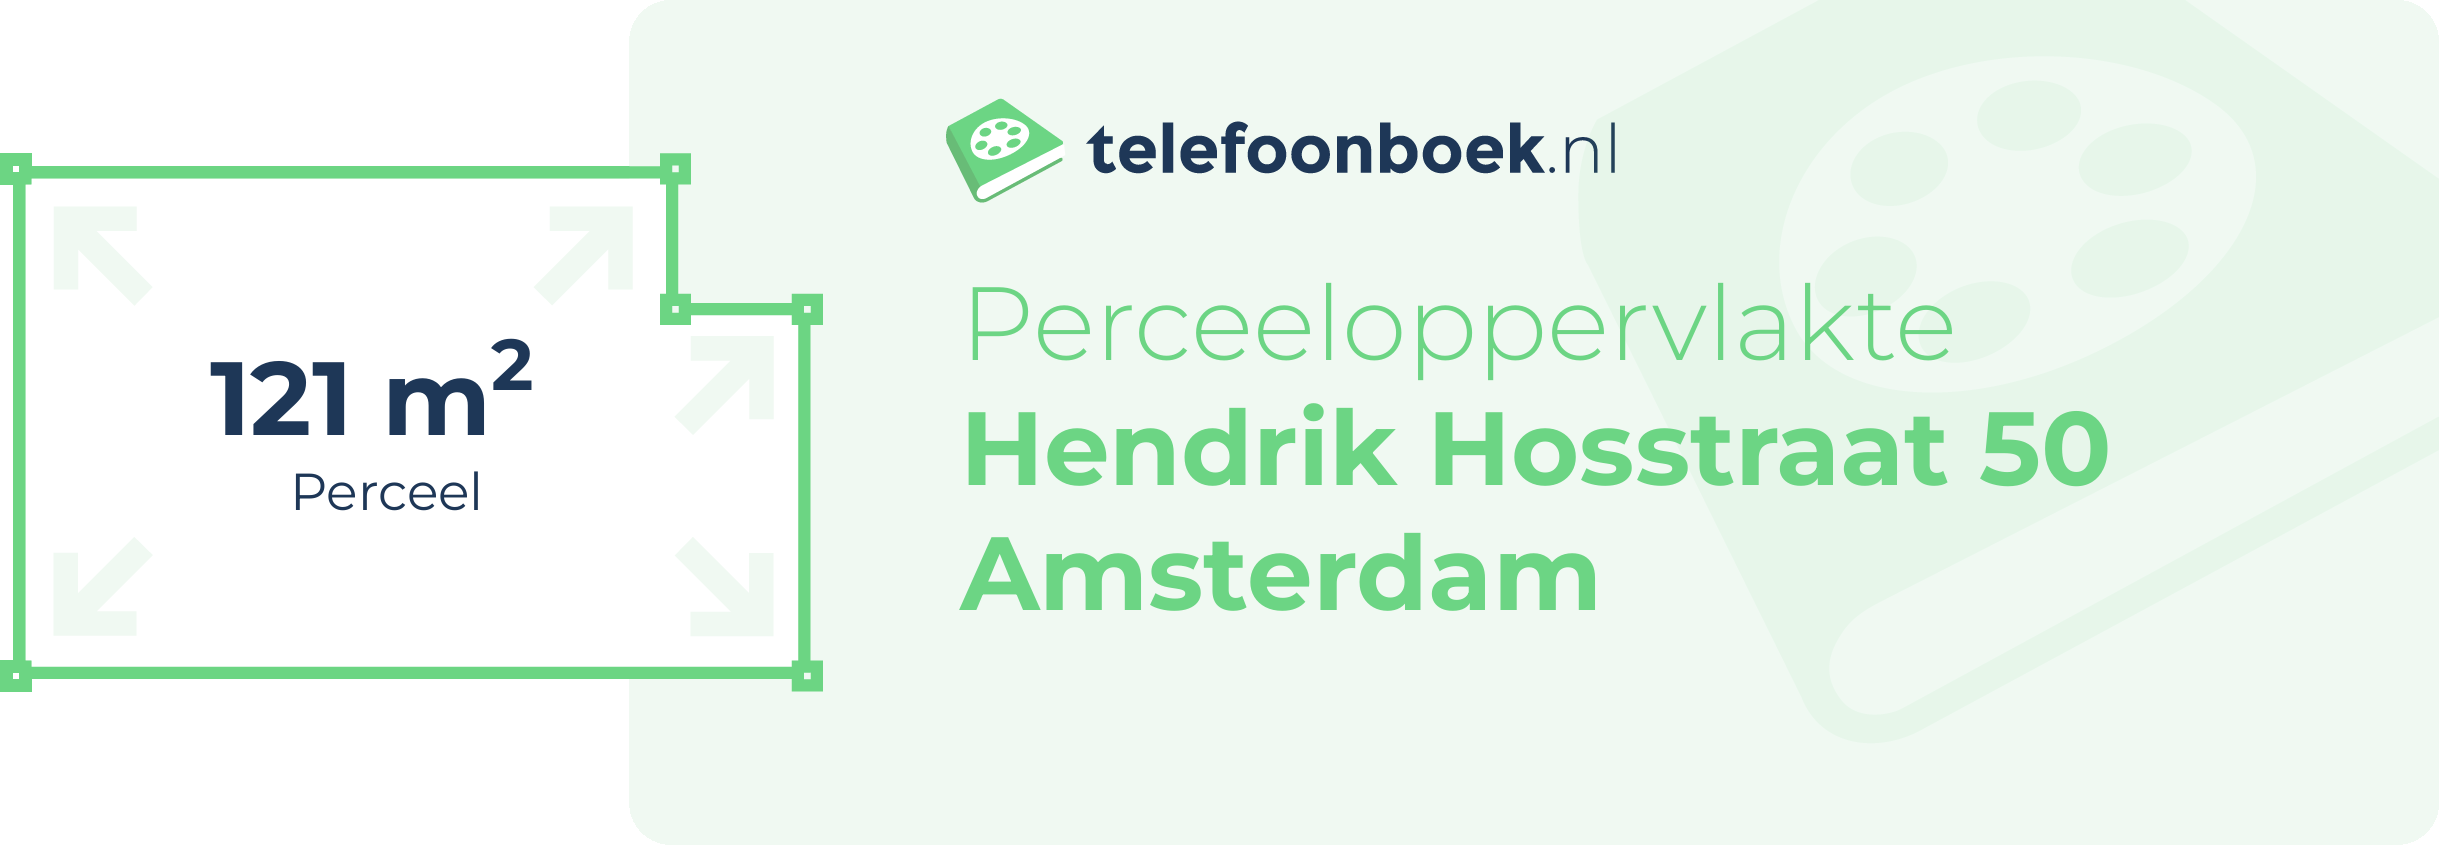 Perceeloppervlakte Hendrik Hosstraat 50 Amsterdam